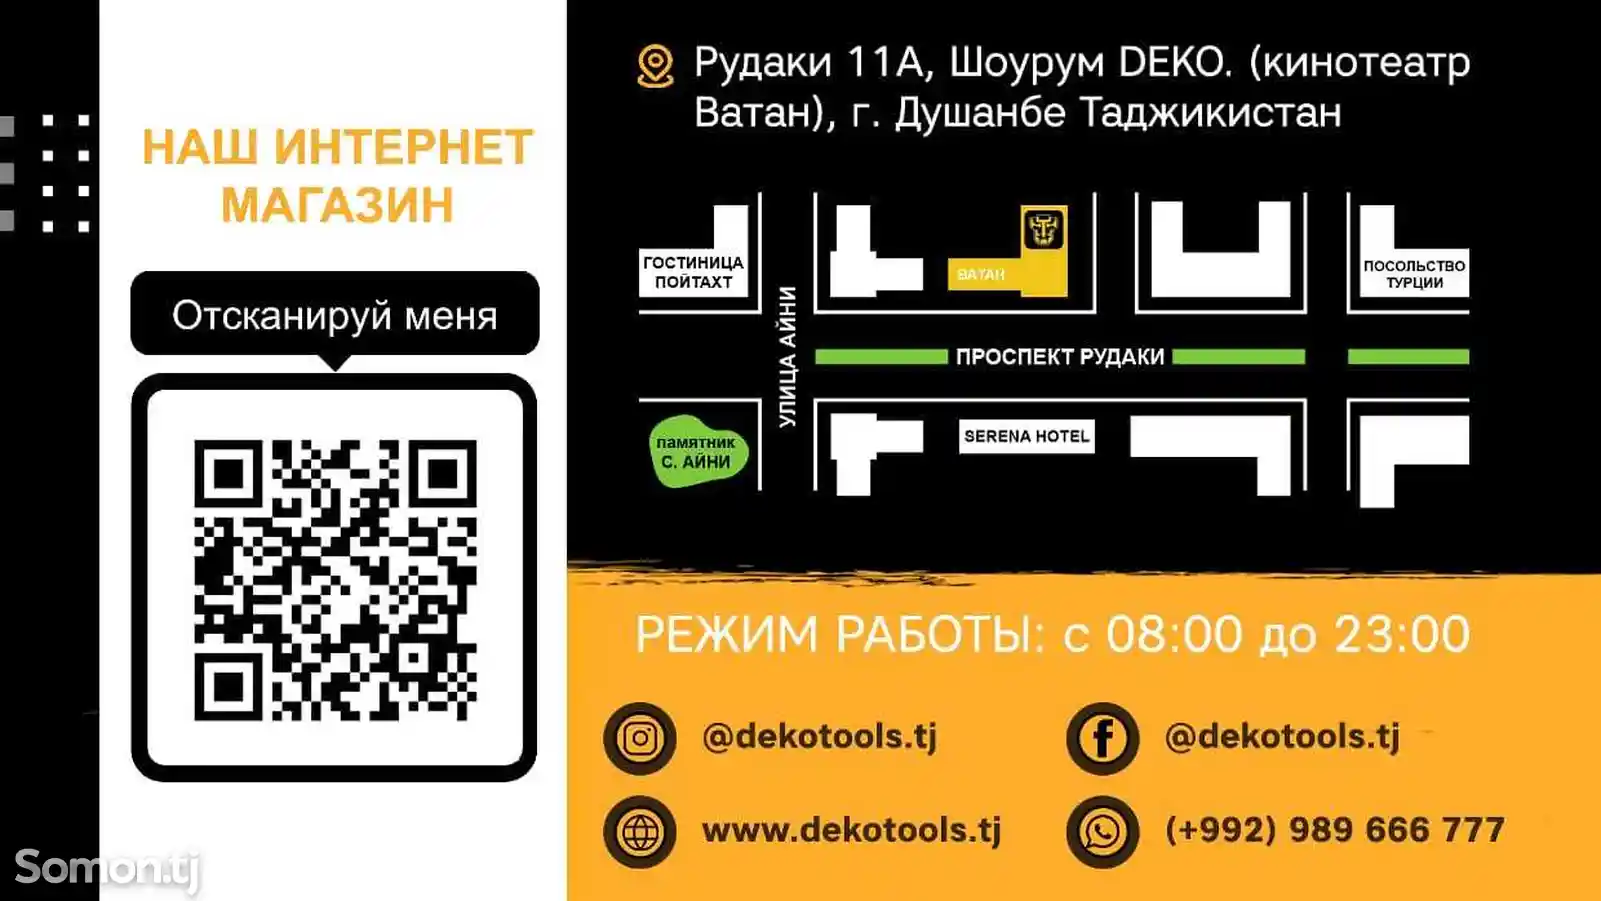 Набор инструментов DEKO DKMT165-10